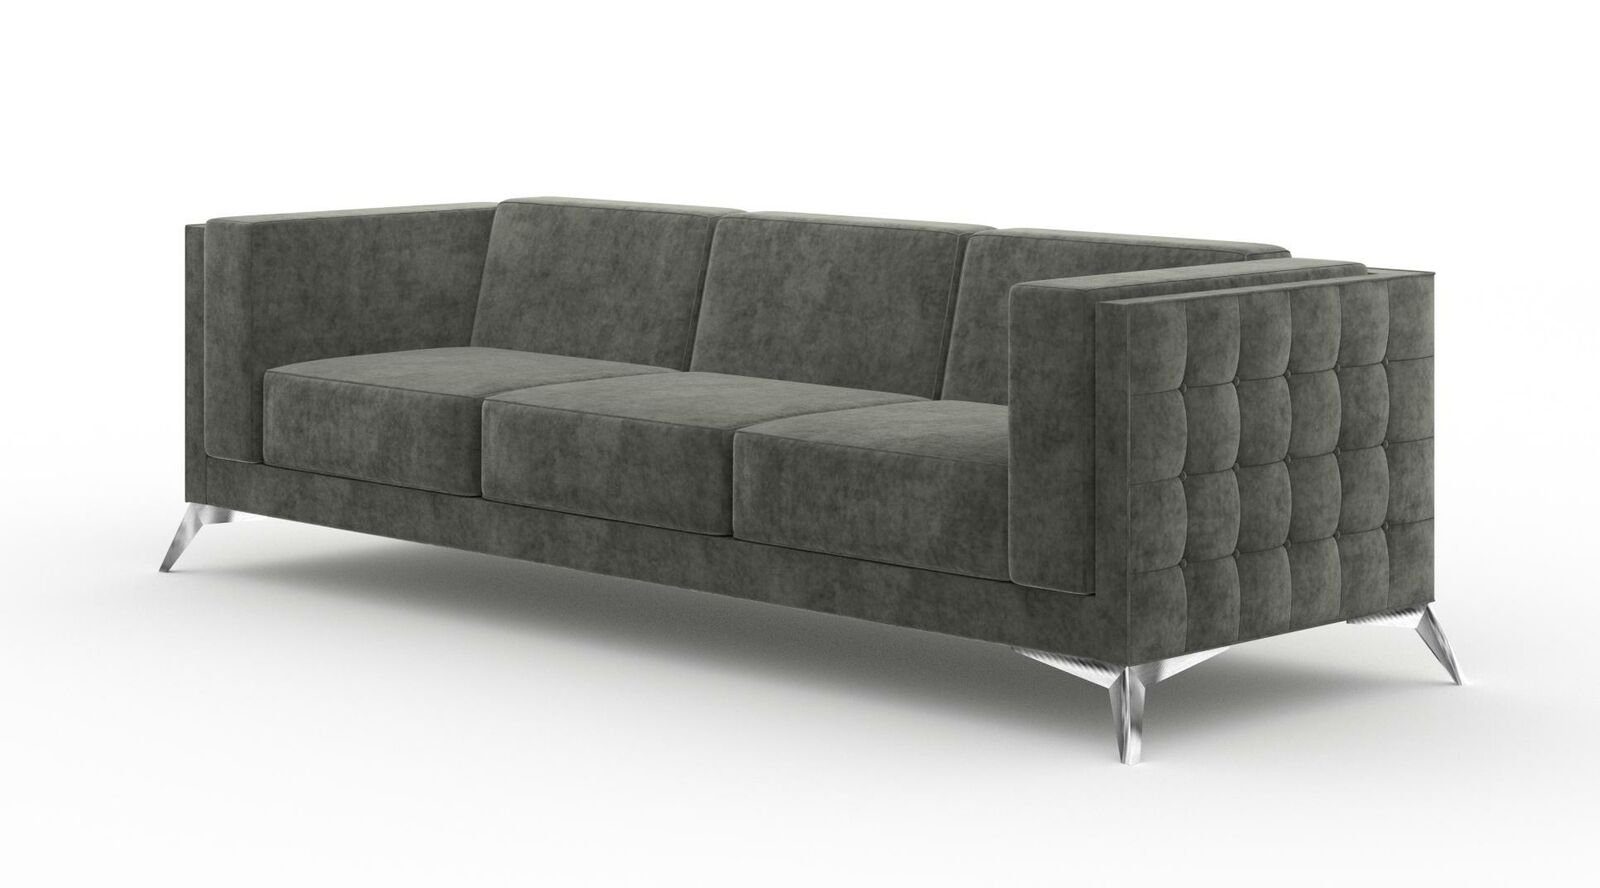 Neu Sofas Design Sitzer Sofa Dreisitzer Dreisitzer Sofa Sofa Sofas JVmoebel 3 Neu, Sitzer Polster Polster Couch Design 3 Couch Chesterfield